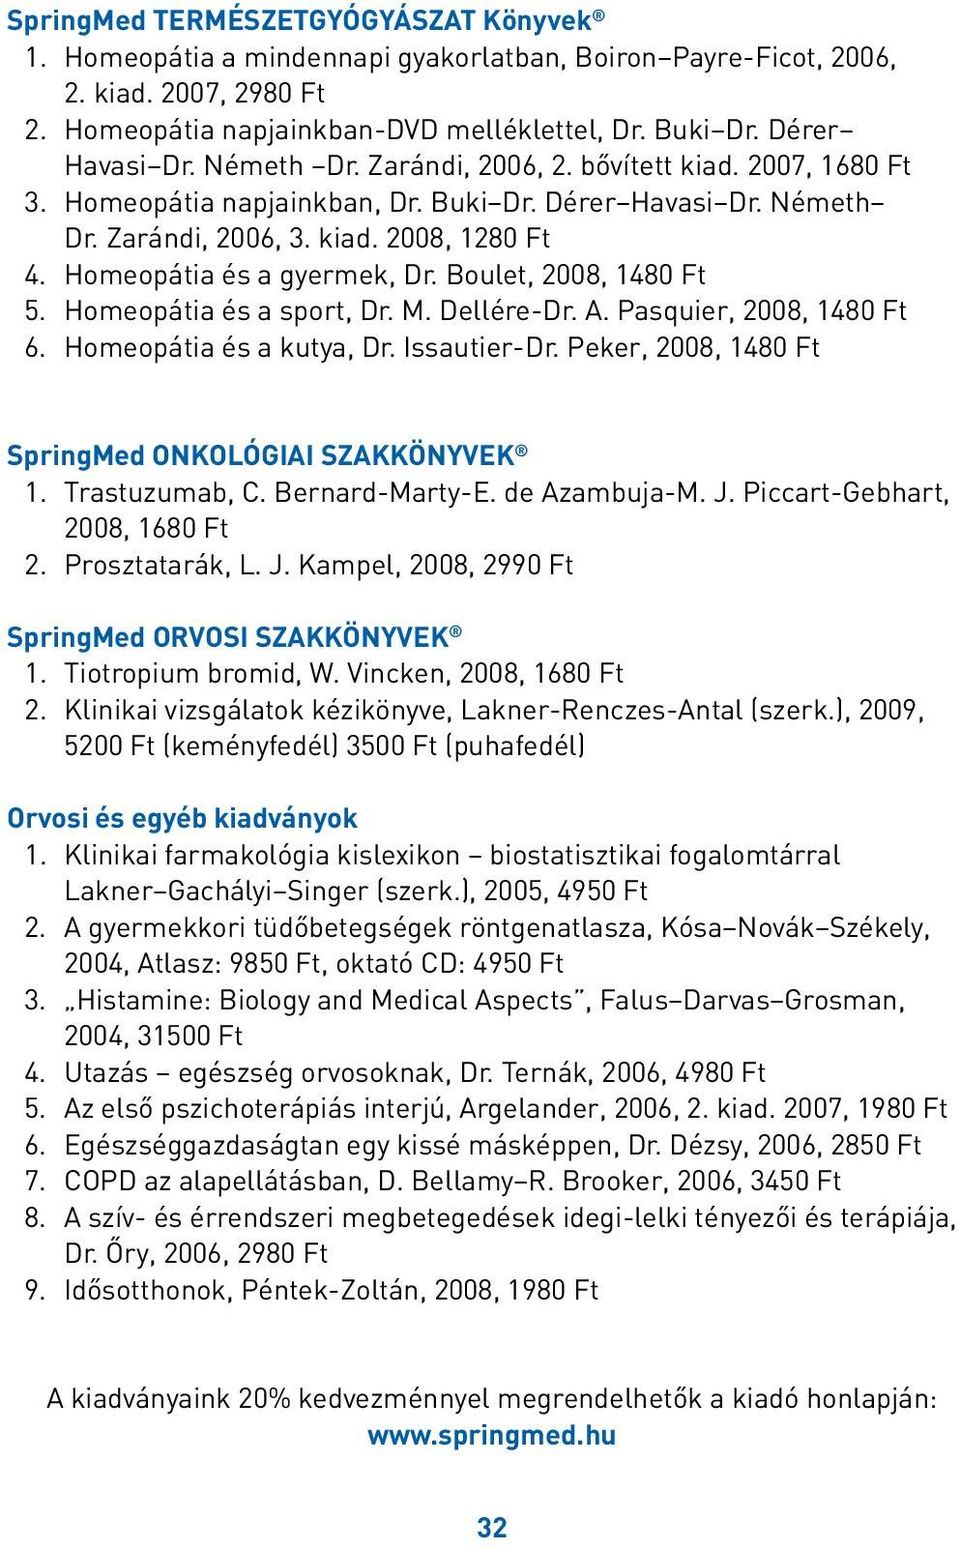 Homeopátia és a gyermek, Dr. Boulet, 2008, 1480 Ft 5. Homeopátia és a sport, Dr. M. Dellére-Dr. A. Pasquier, 2008, 1480 Ft 6. Homeopátia és a kutya, Dr. Issautier-Dr.